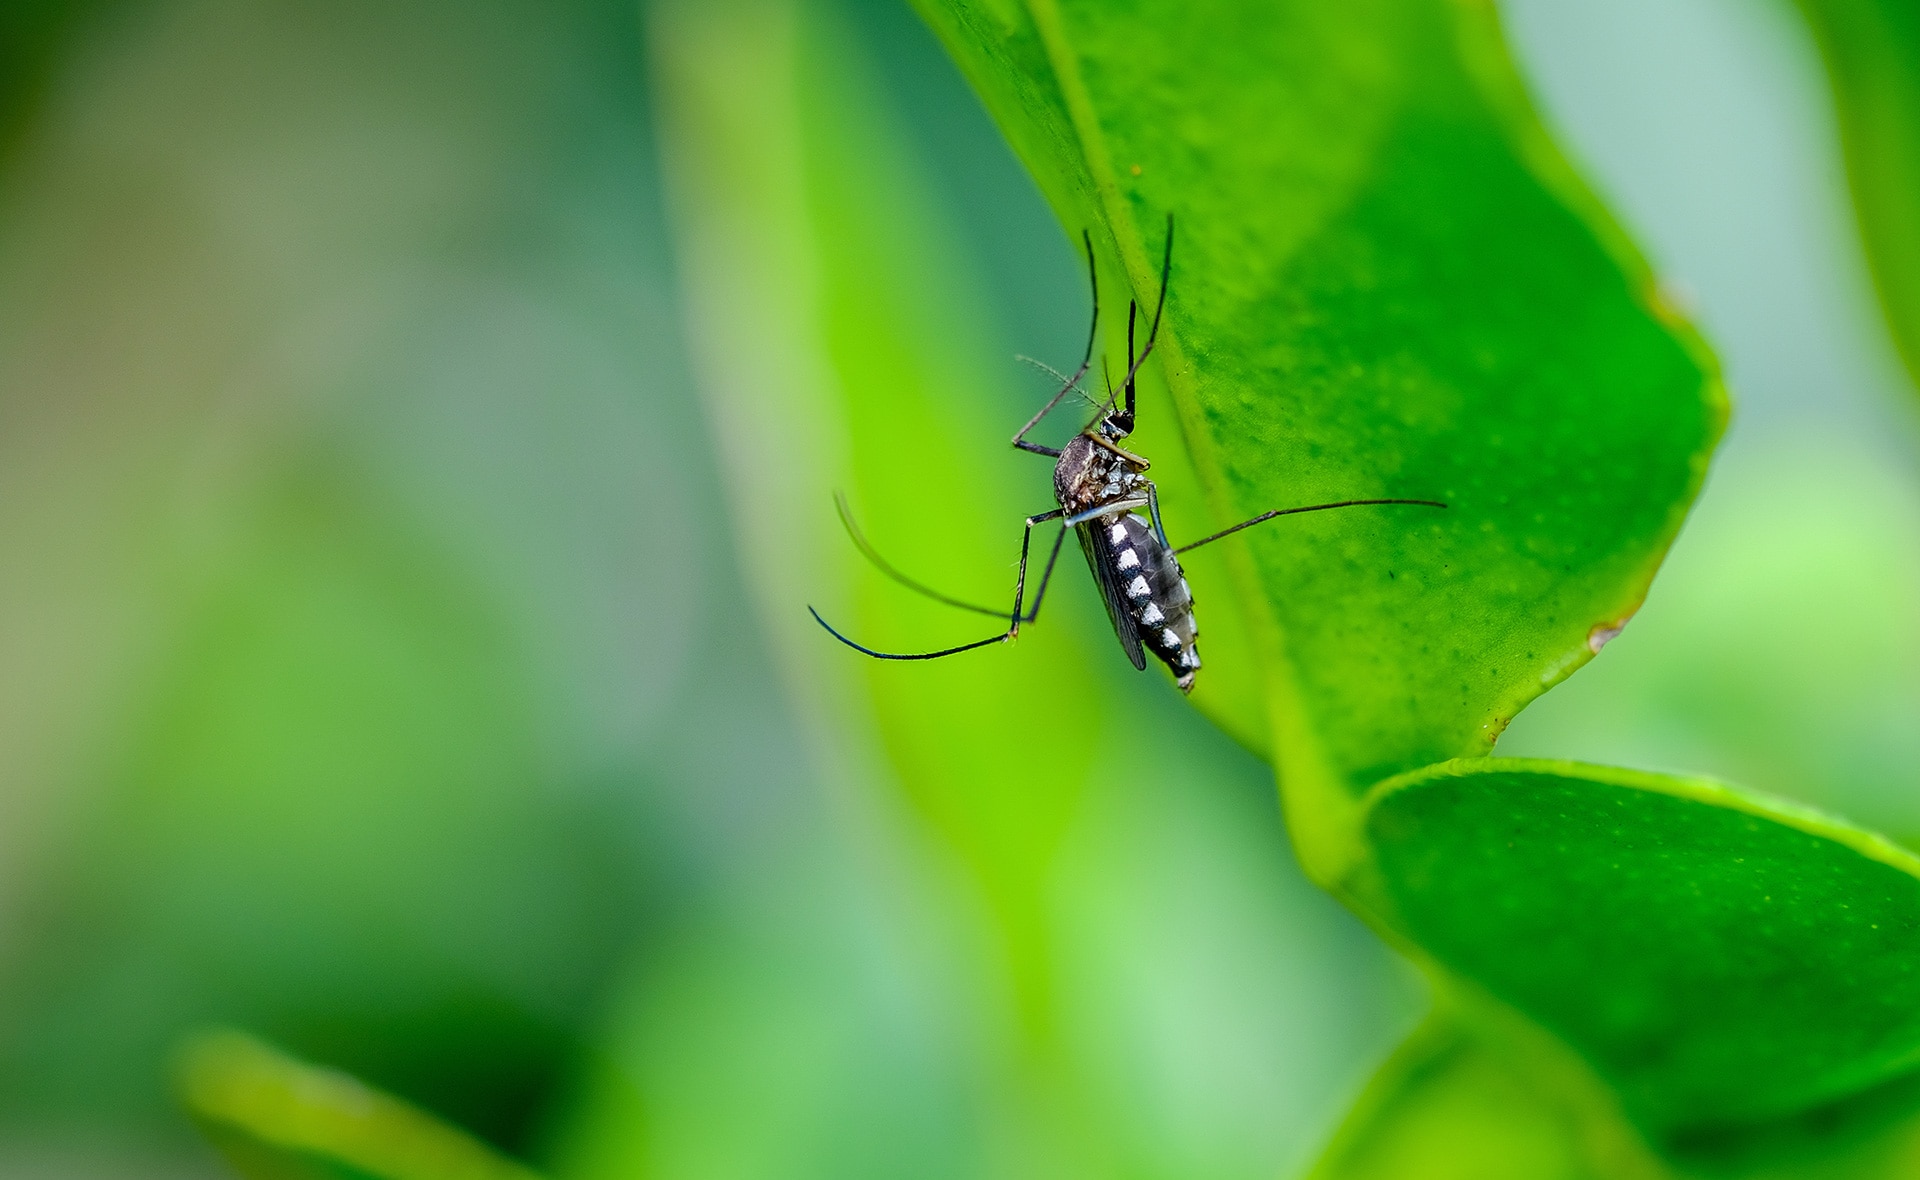 BBVA-mosquitos-laboratorio-infeccion-enfermedades-salud-sostenibilidad-especies-